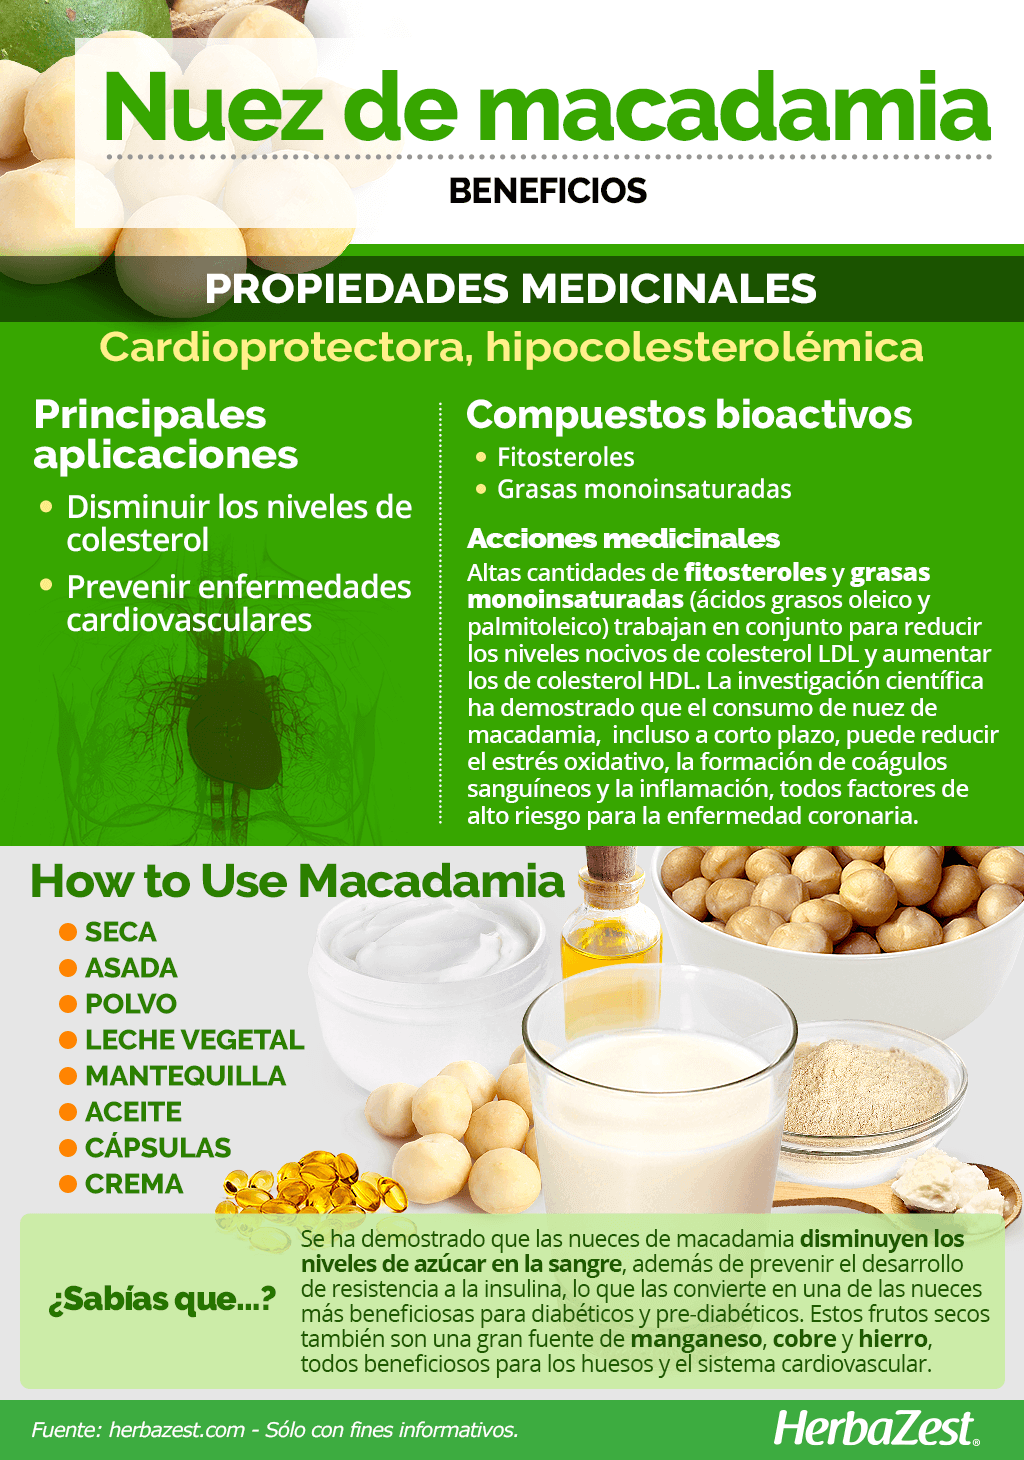 Beneficios de la nuez de macadamia